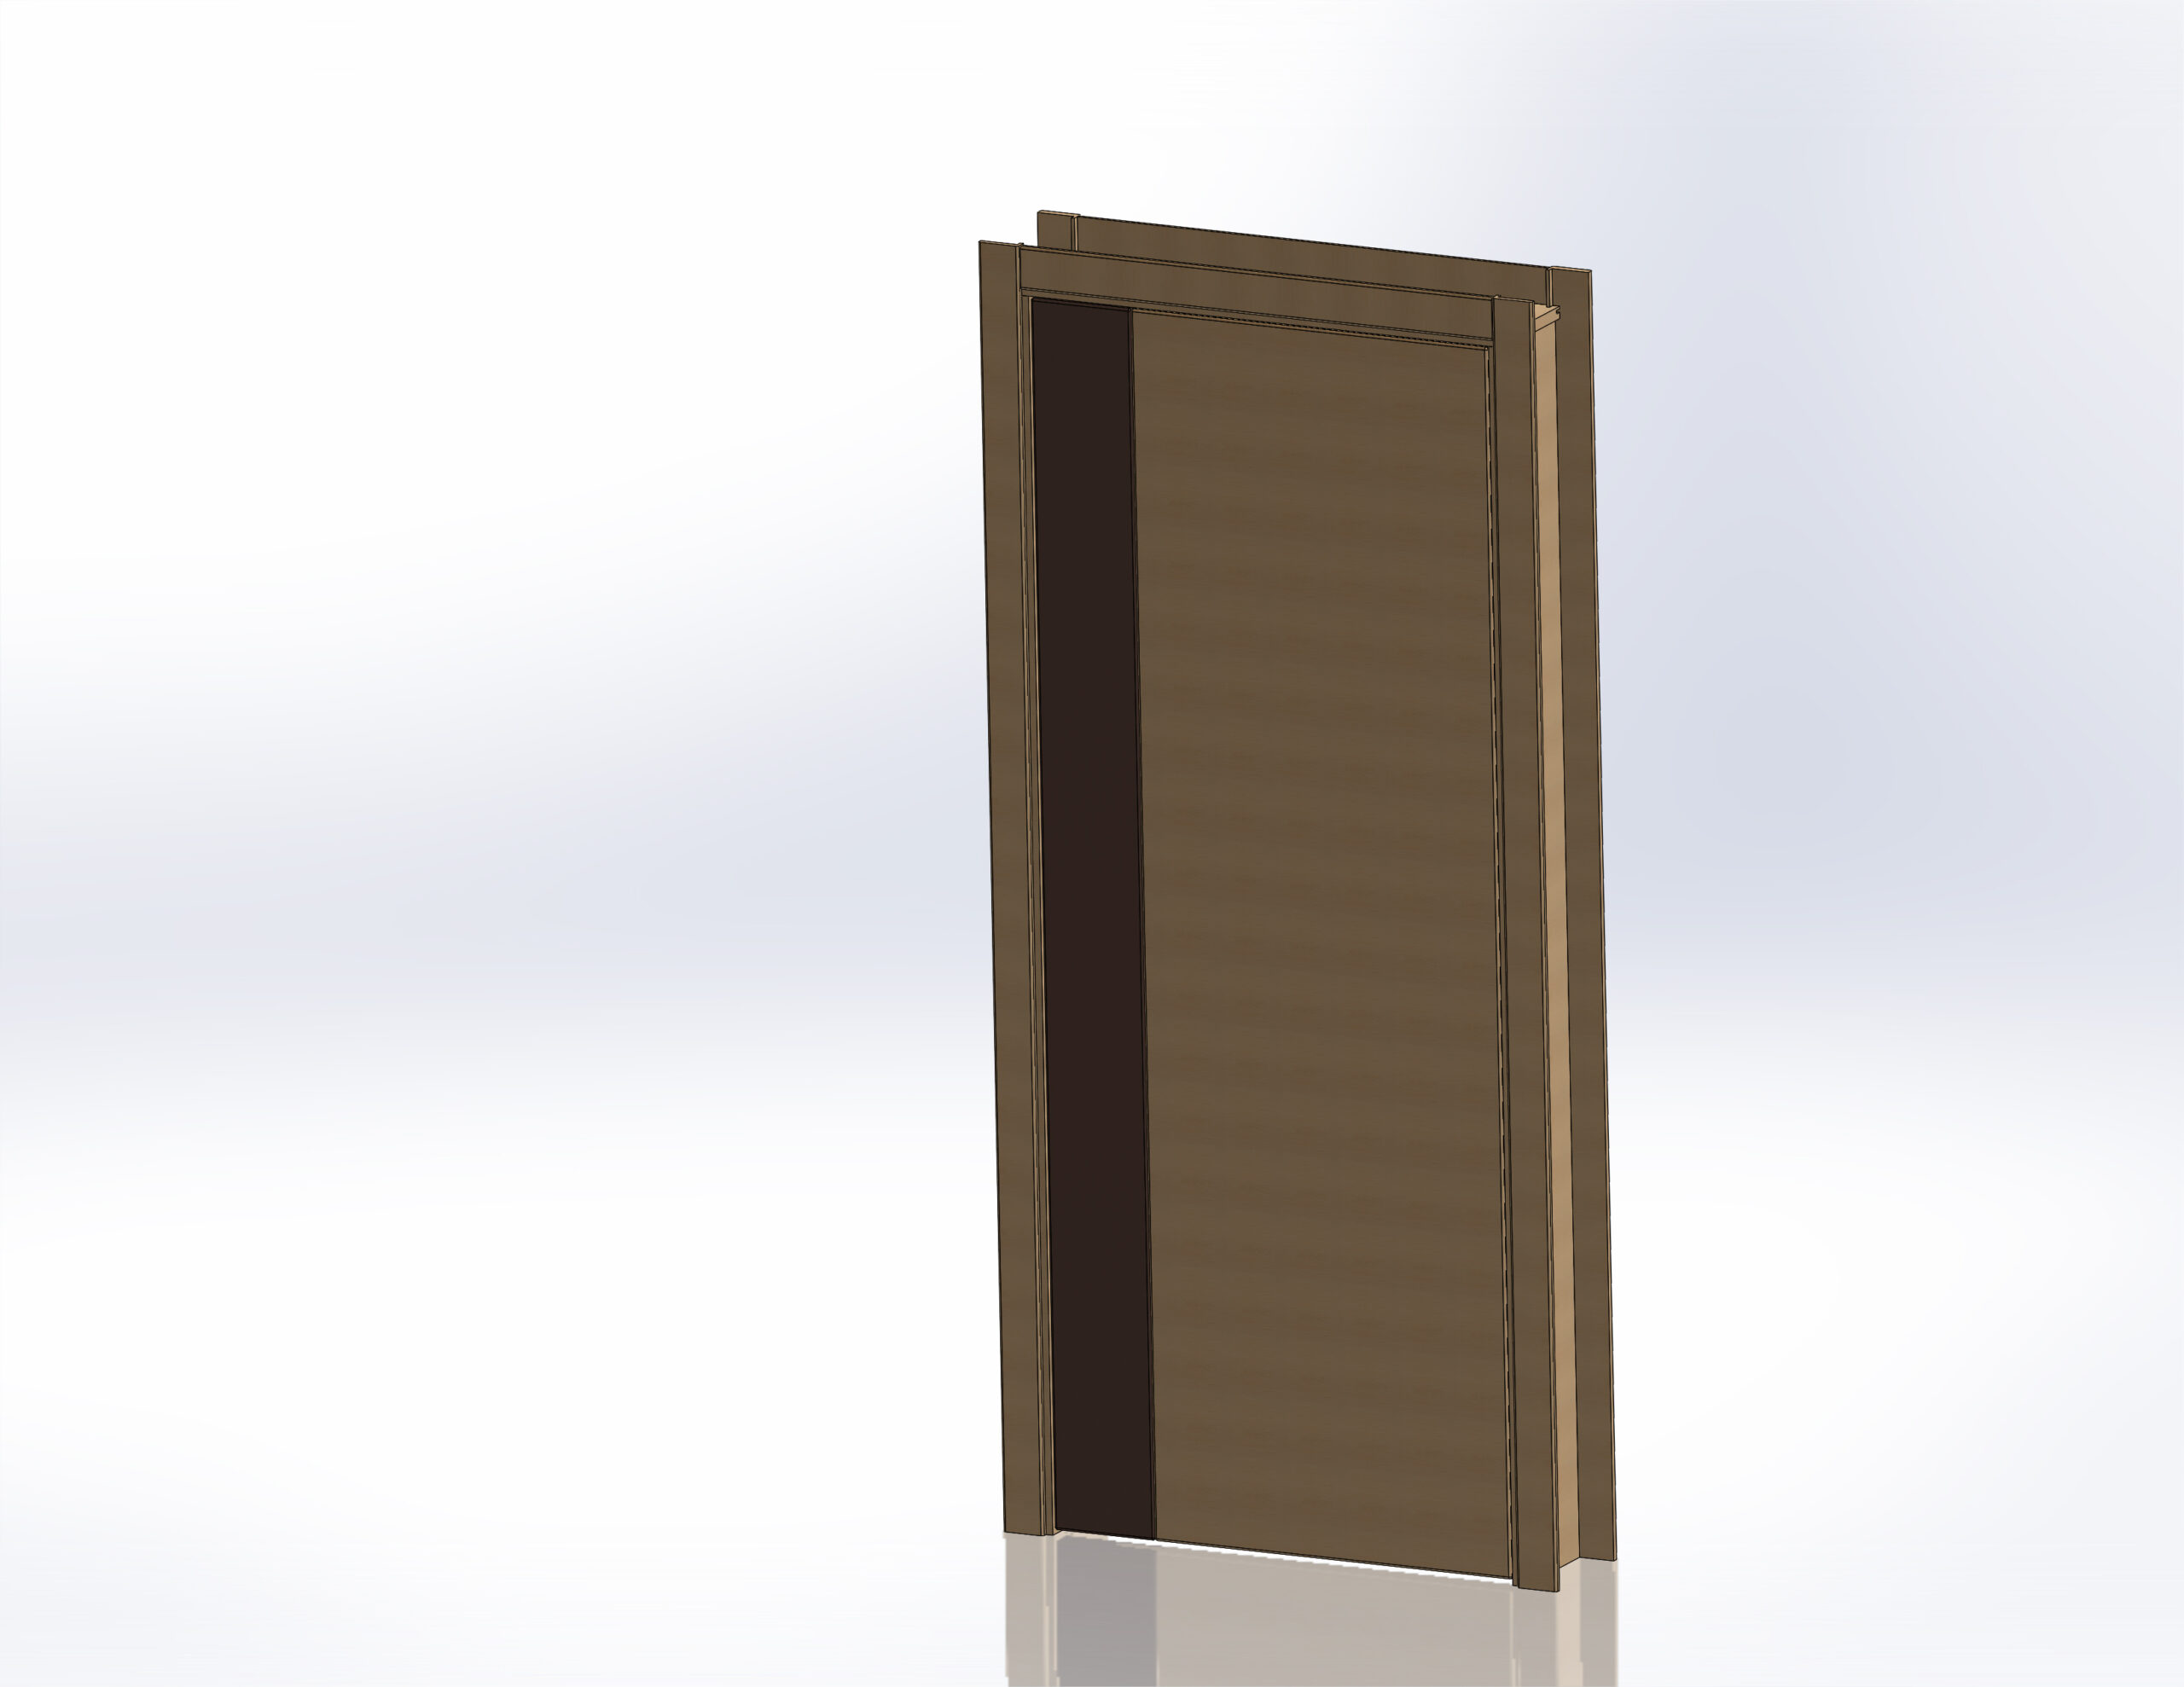 Двери готовой коробкой. Дверной блок. Дверной блок композитный. Дверной блок 22-10/1 (б). Дверные блоки в сборе картинка.